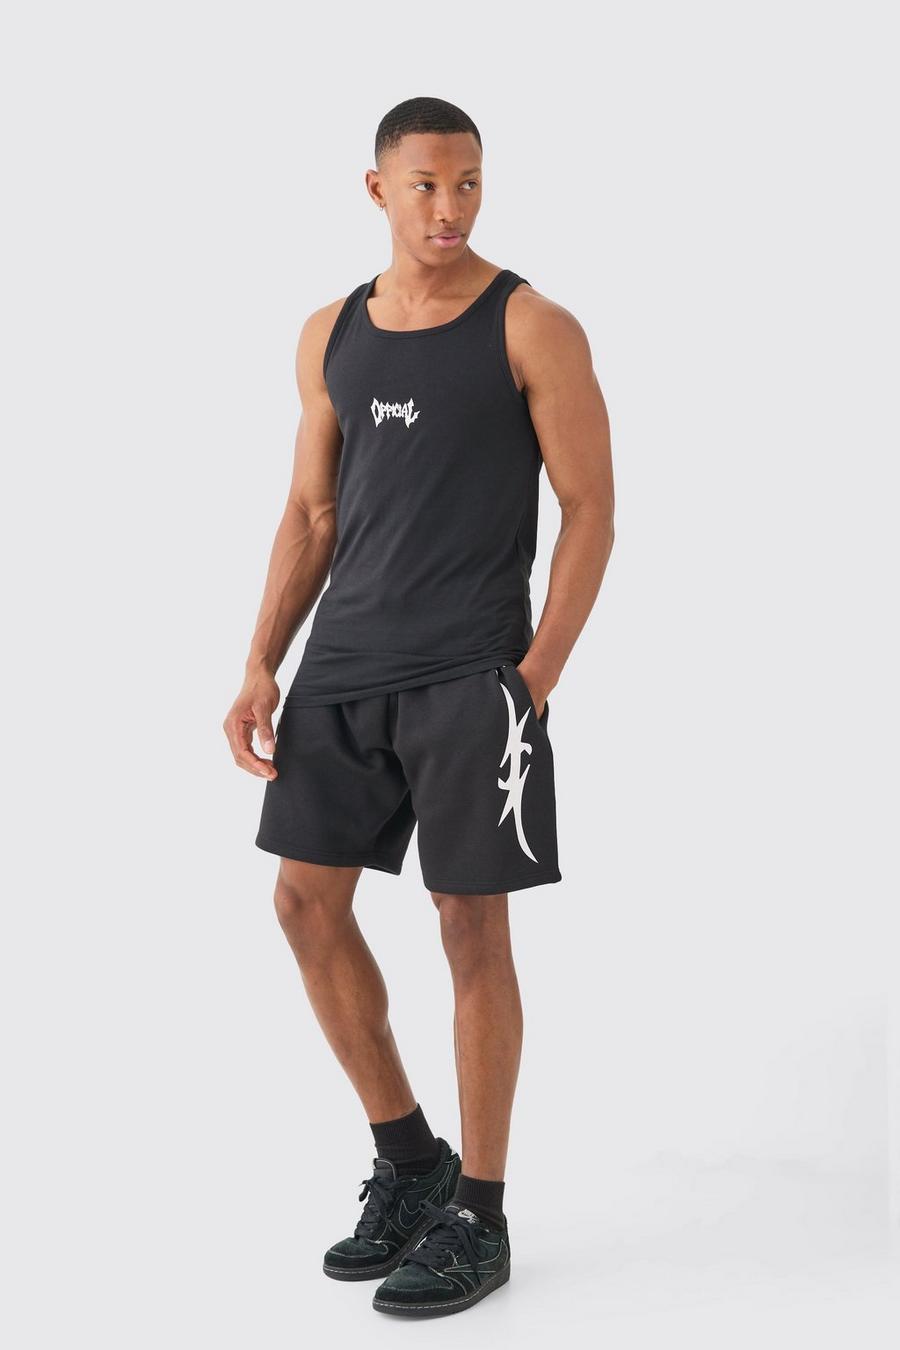 Conjunto de pantalón corto y camiseta sin mangas con estampado gráfico Official ajustado al músculo, Black